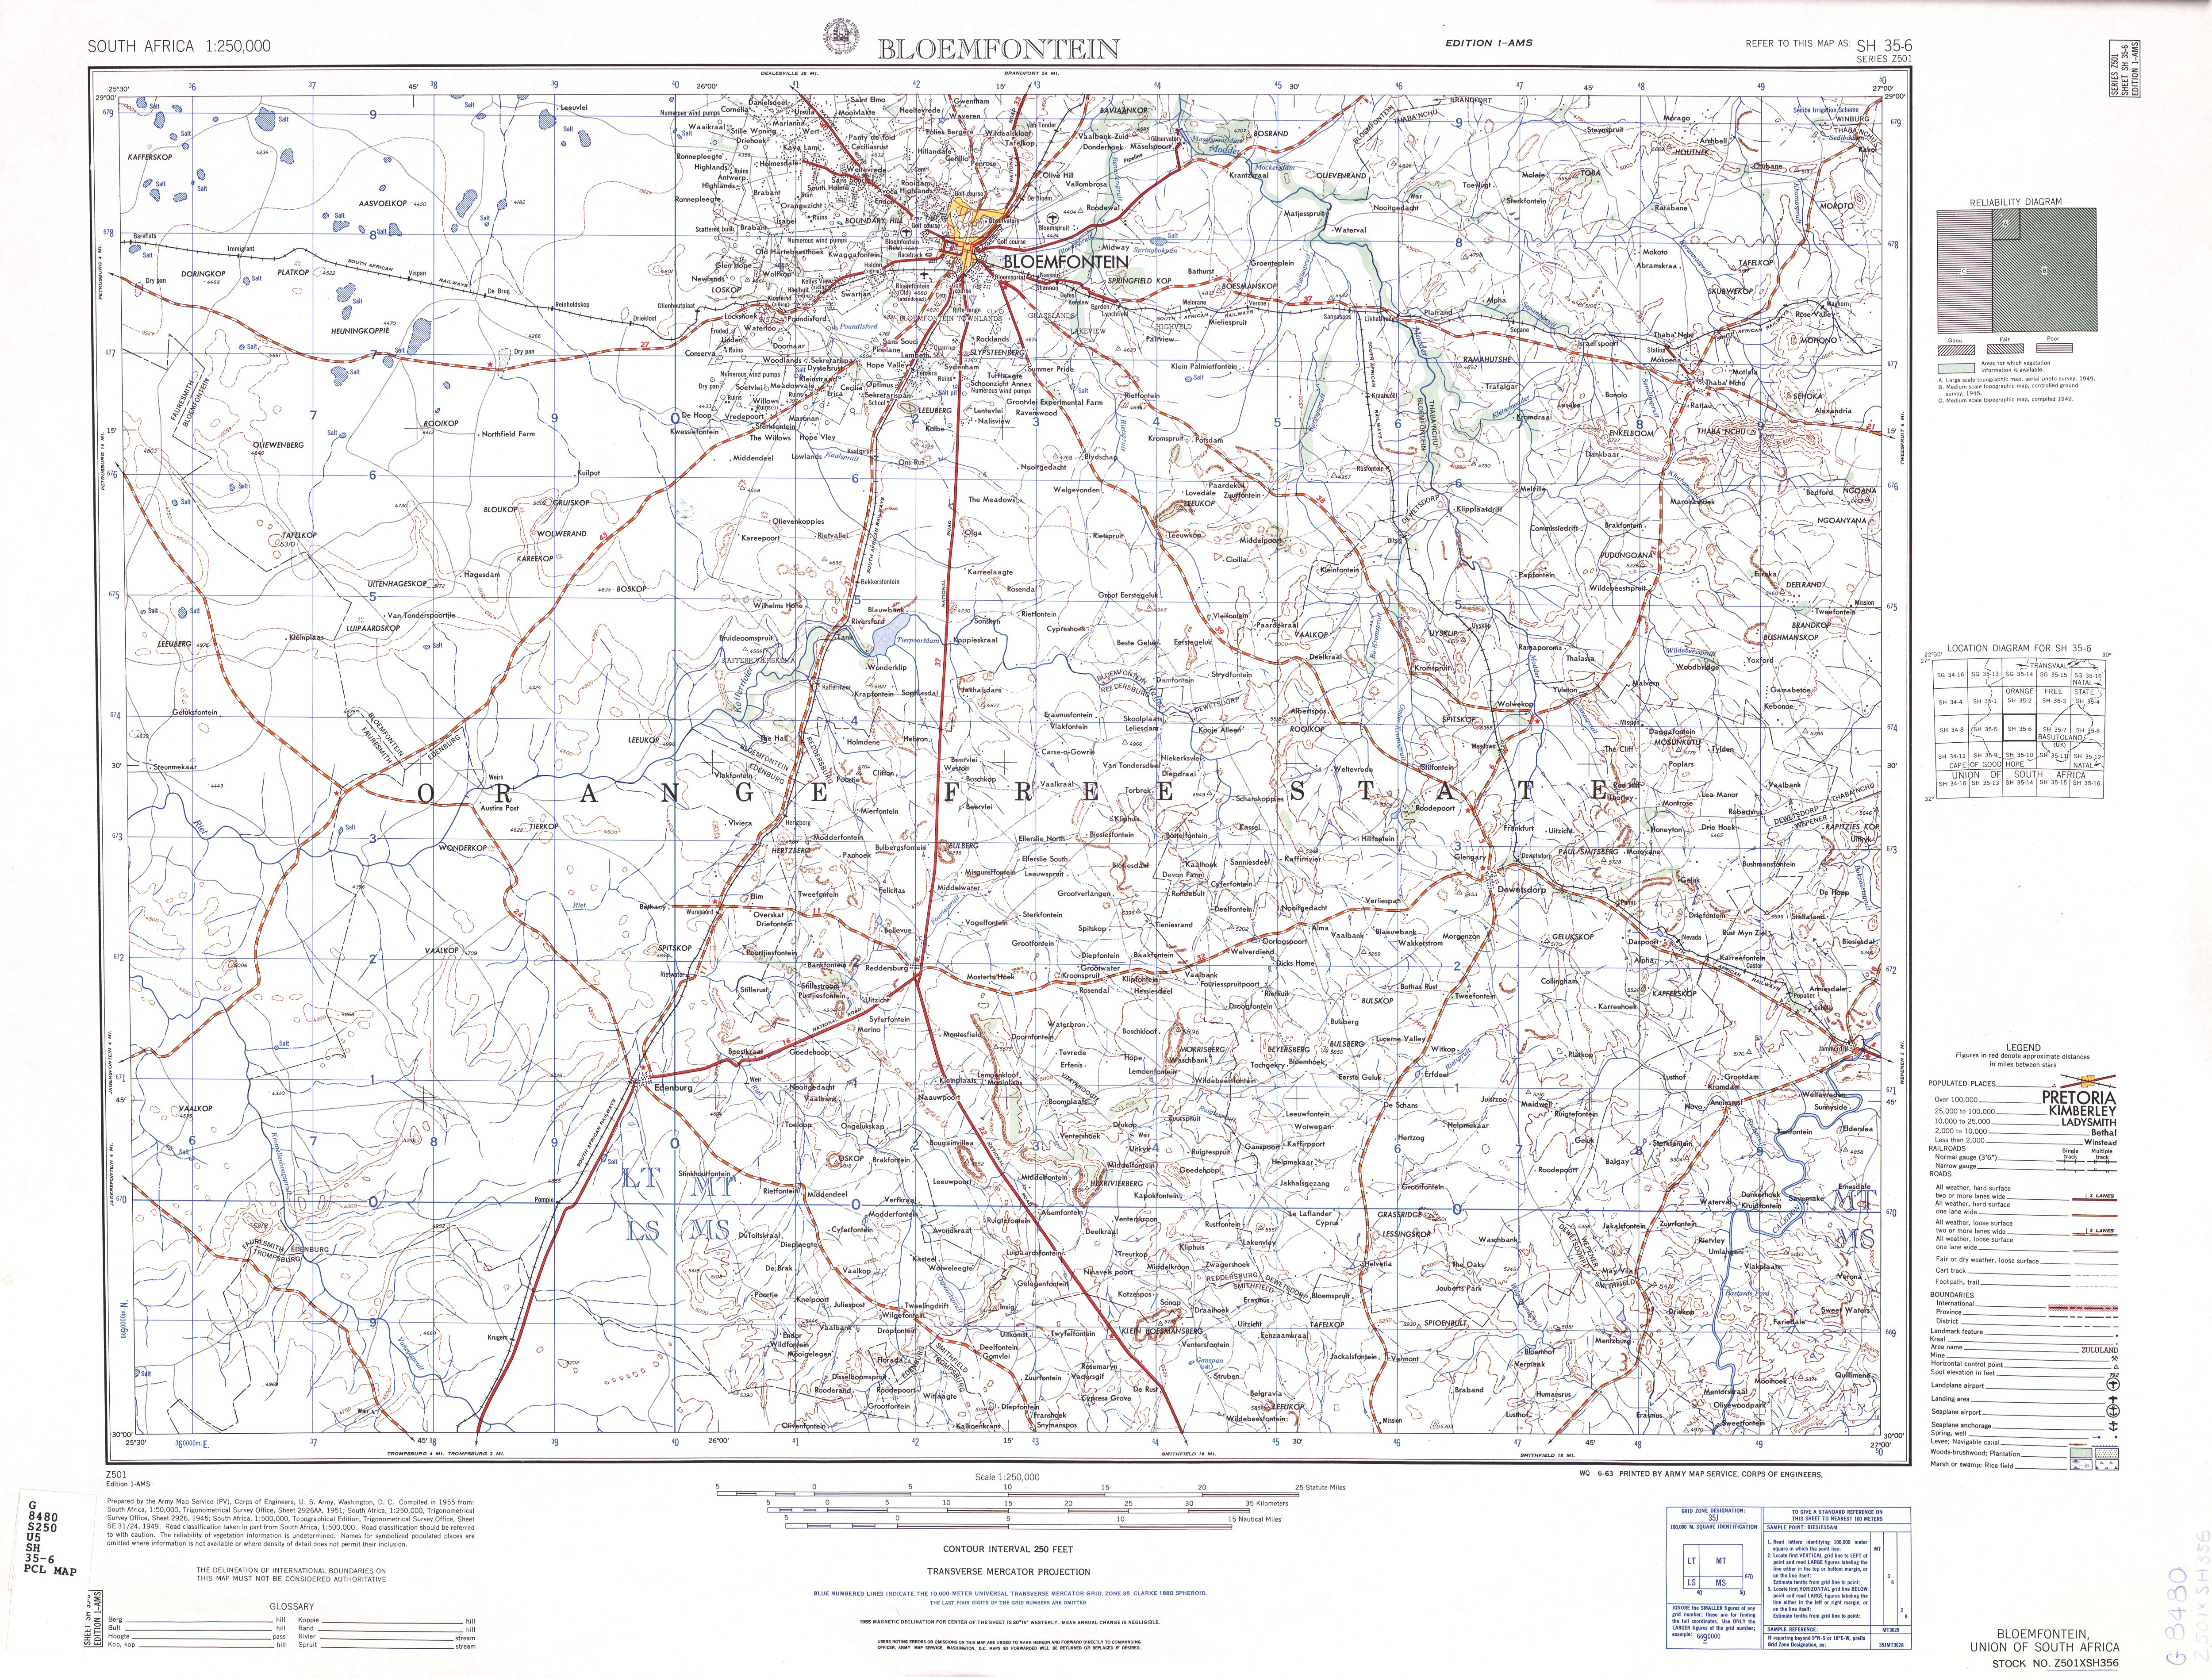 Hoja Bloemfontein del Mapa Topográfico de África Meridional 1954